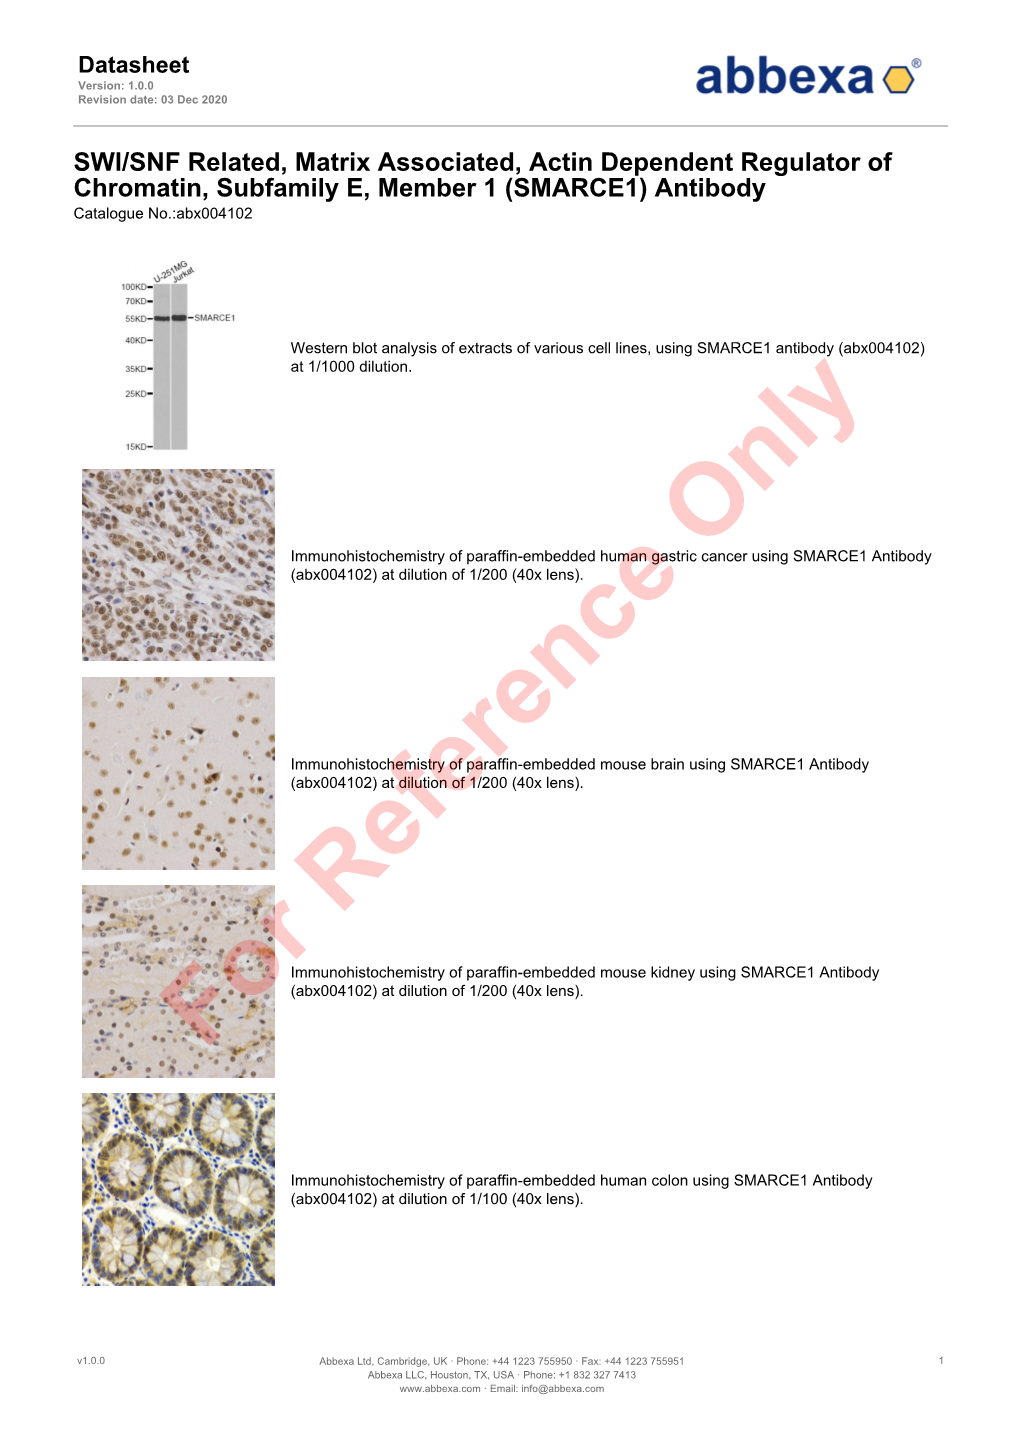 (SMARCE1) Antibody Catalogue No.:Abx004102